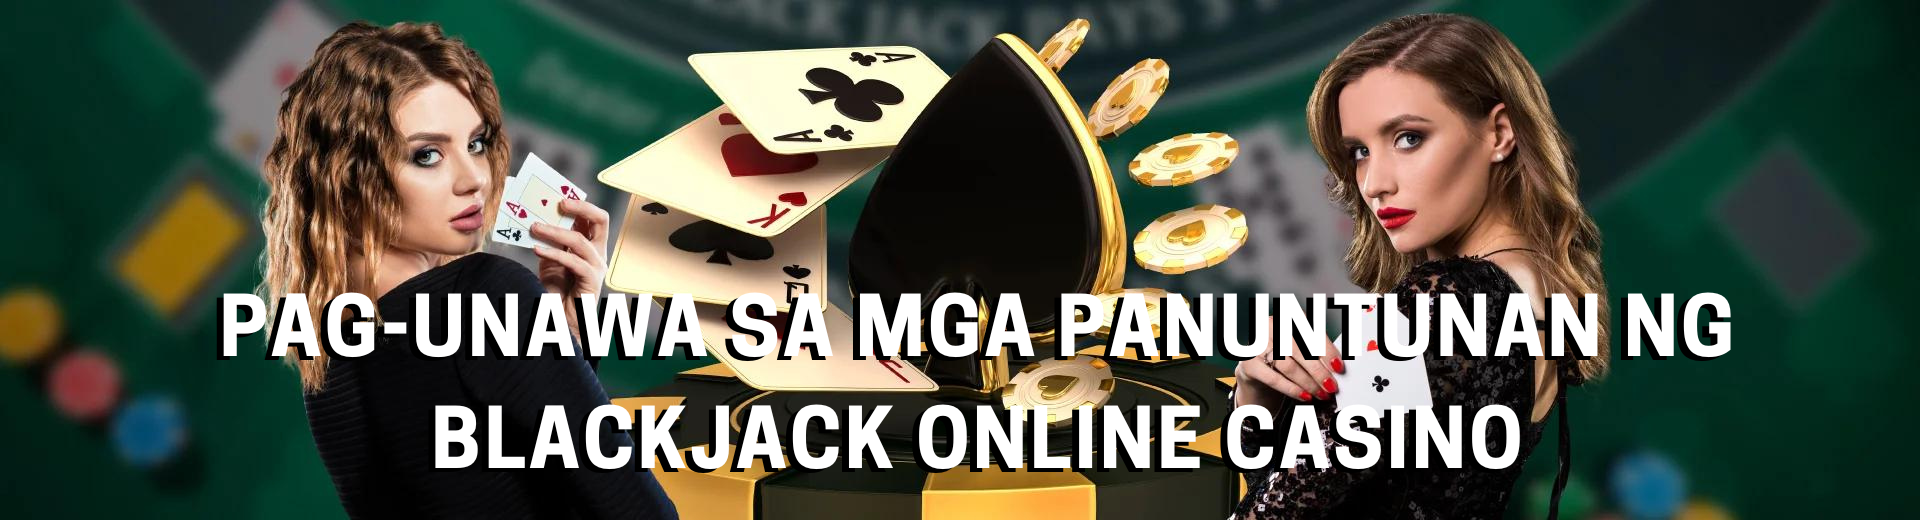 Pag-unawa sa Mga Panuntunan ng Blackjack Online Casino | OKBet